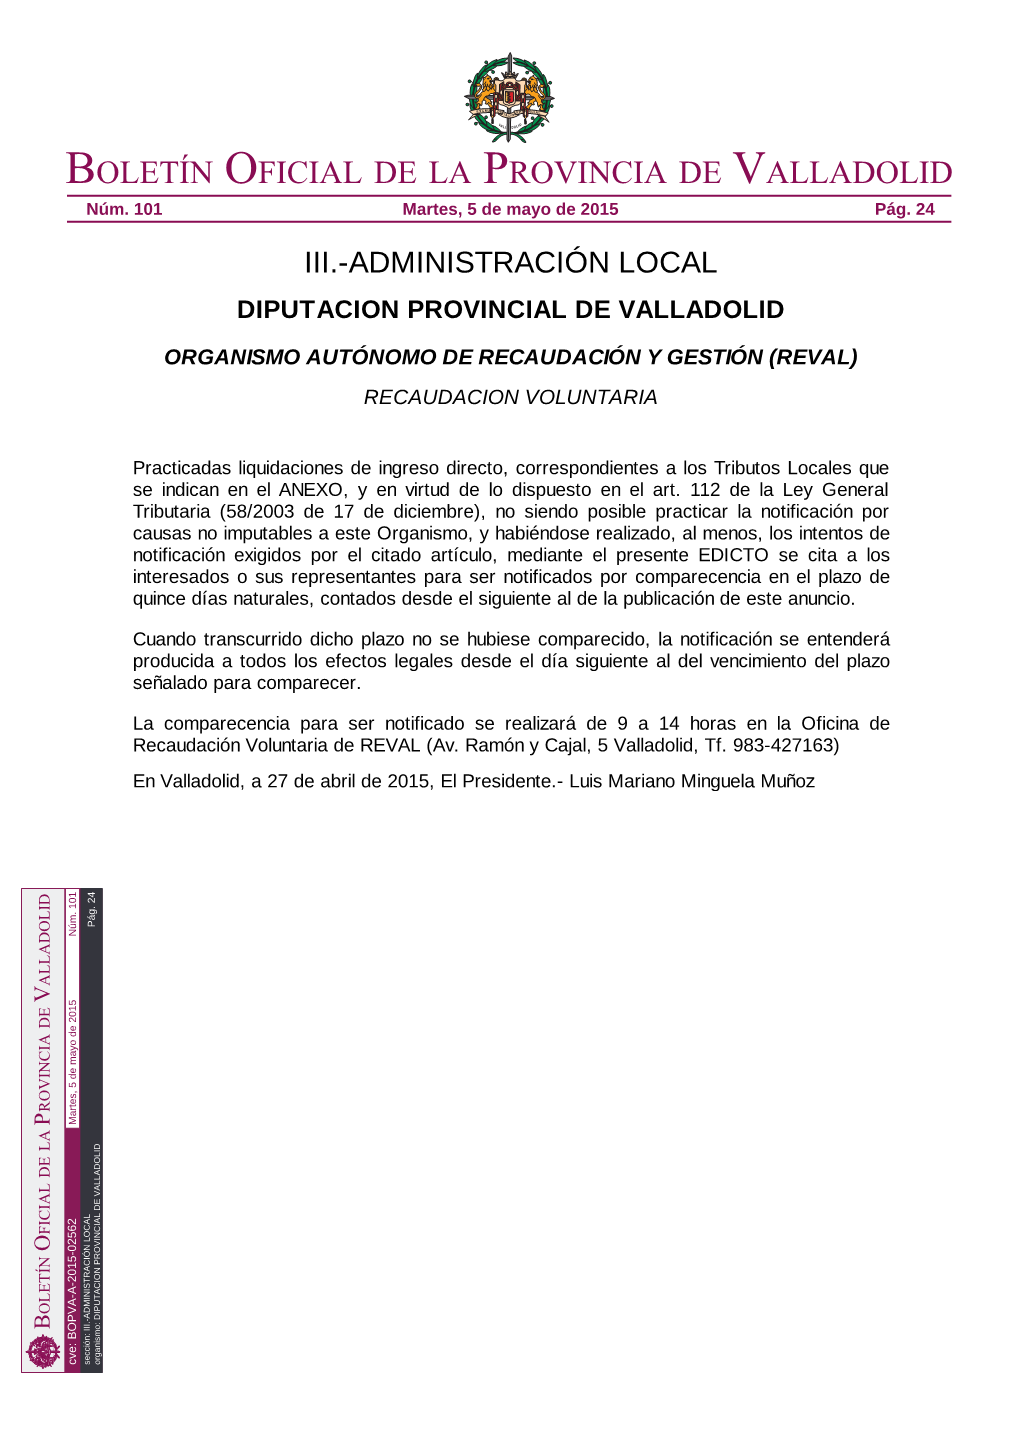 Diputacion Provincial De Valladolid